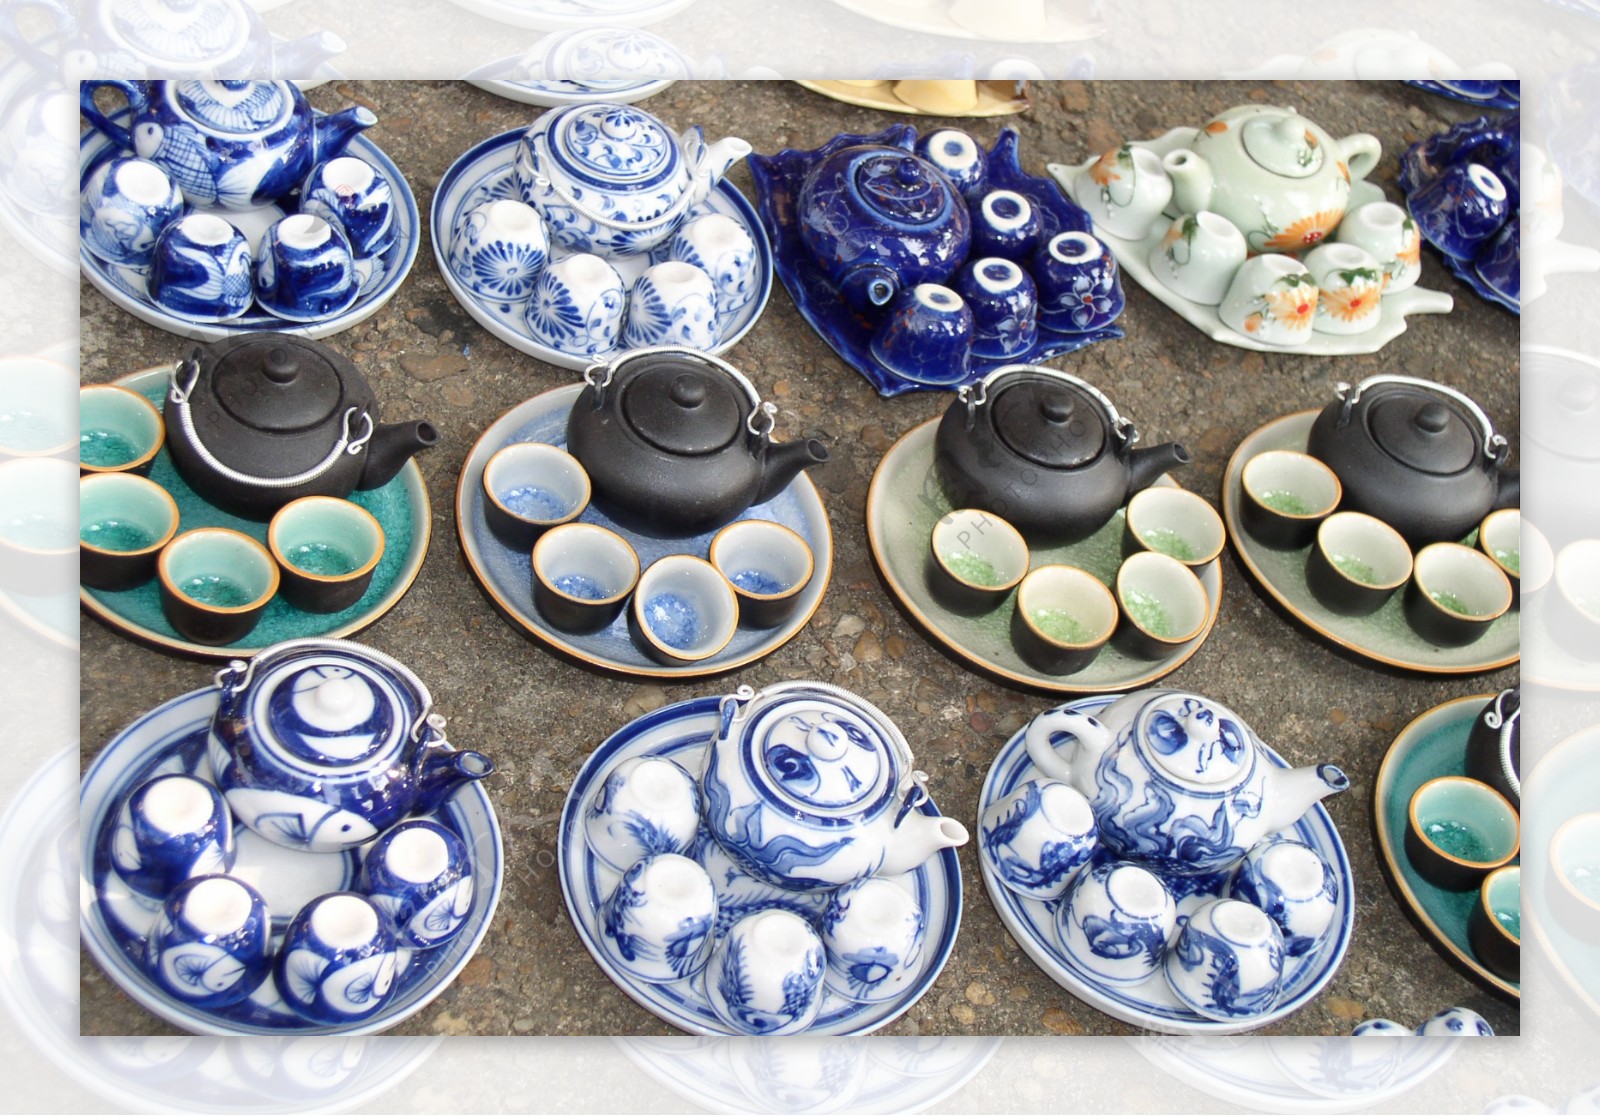 中国陶瓷茶具